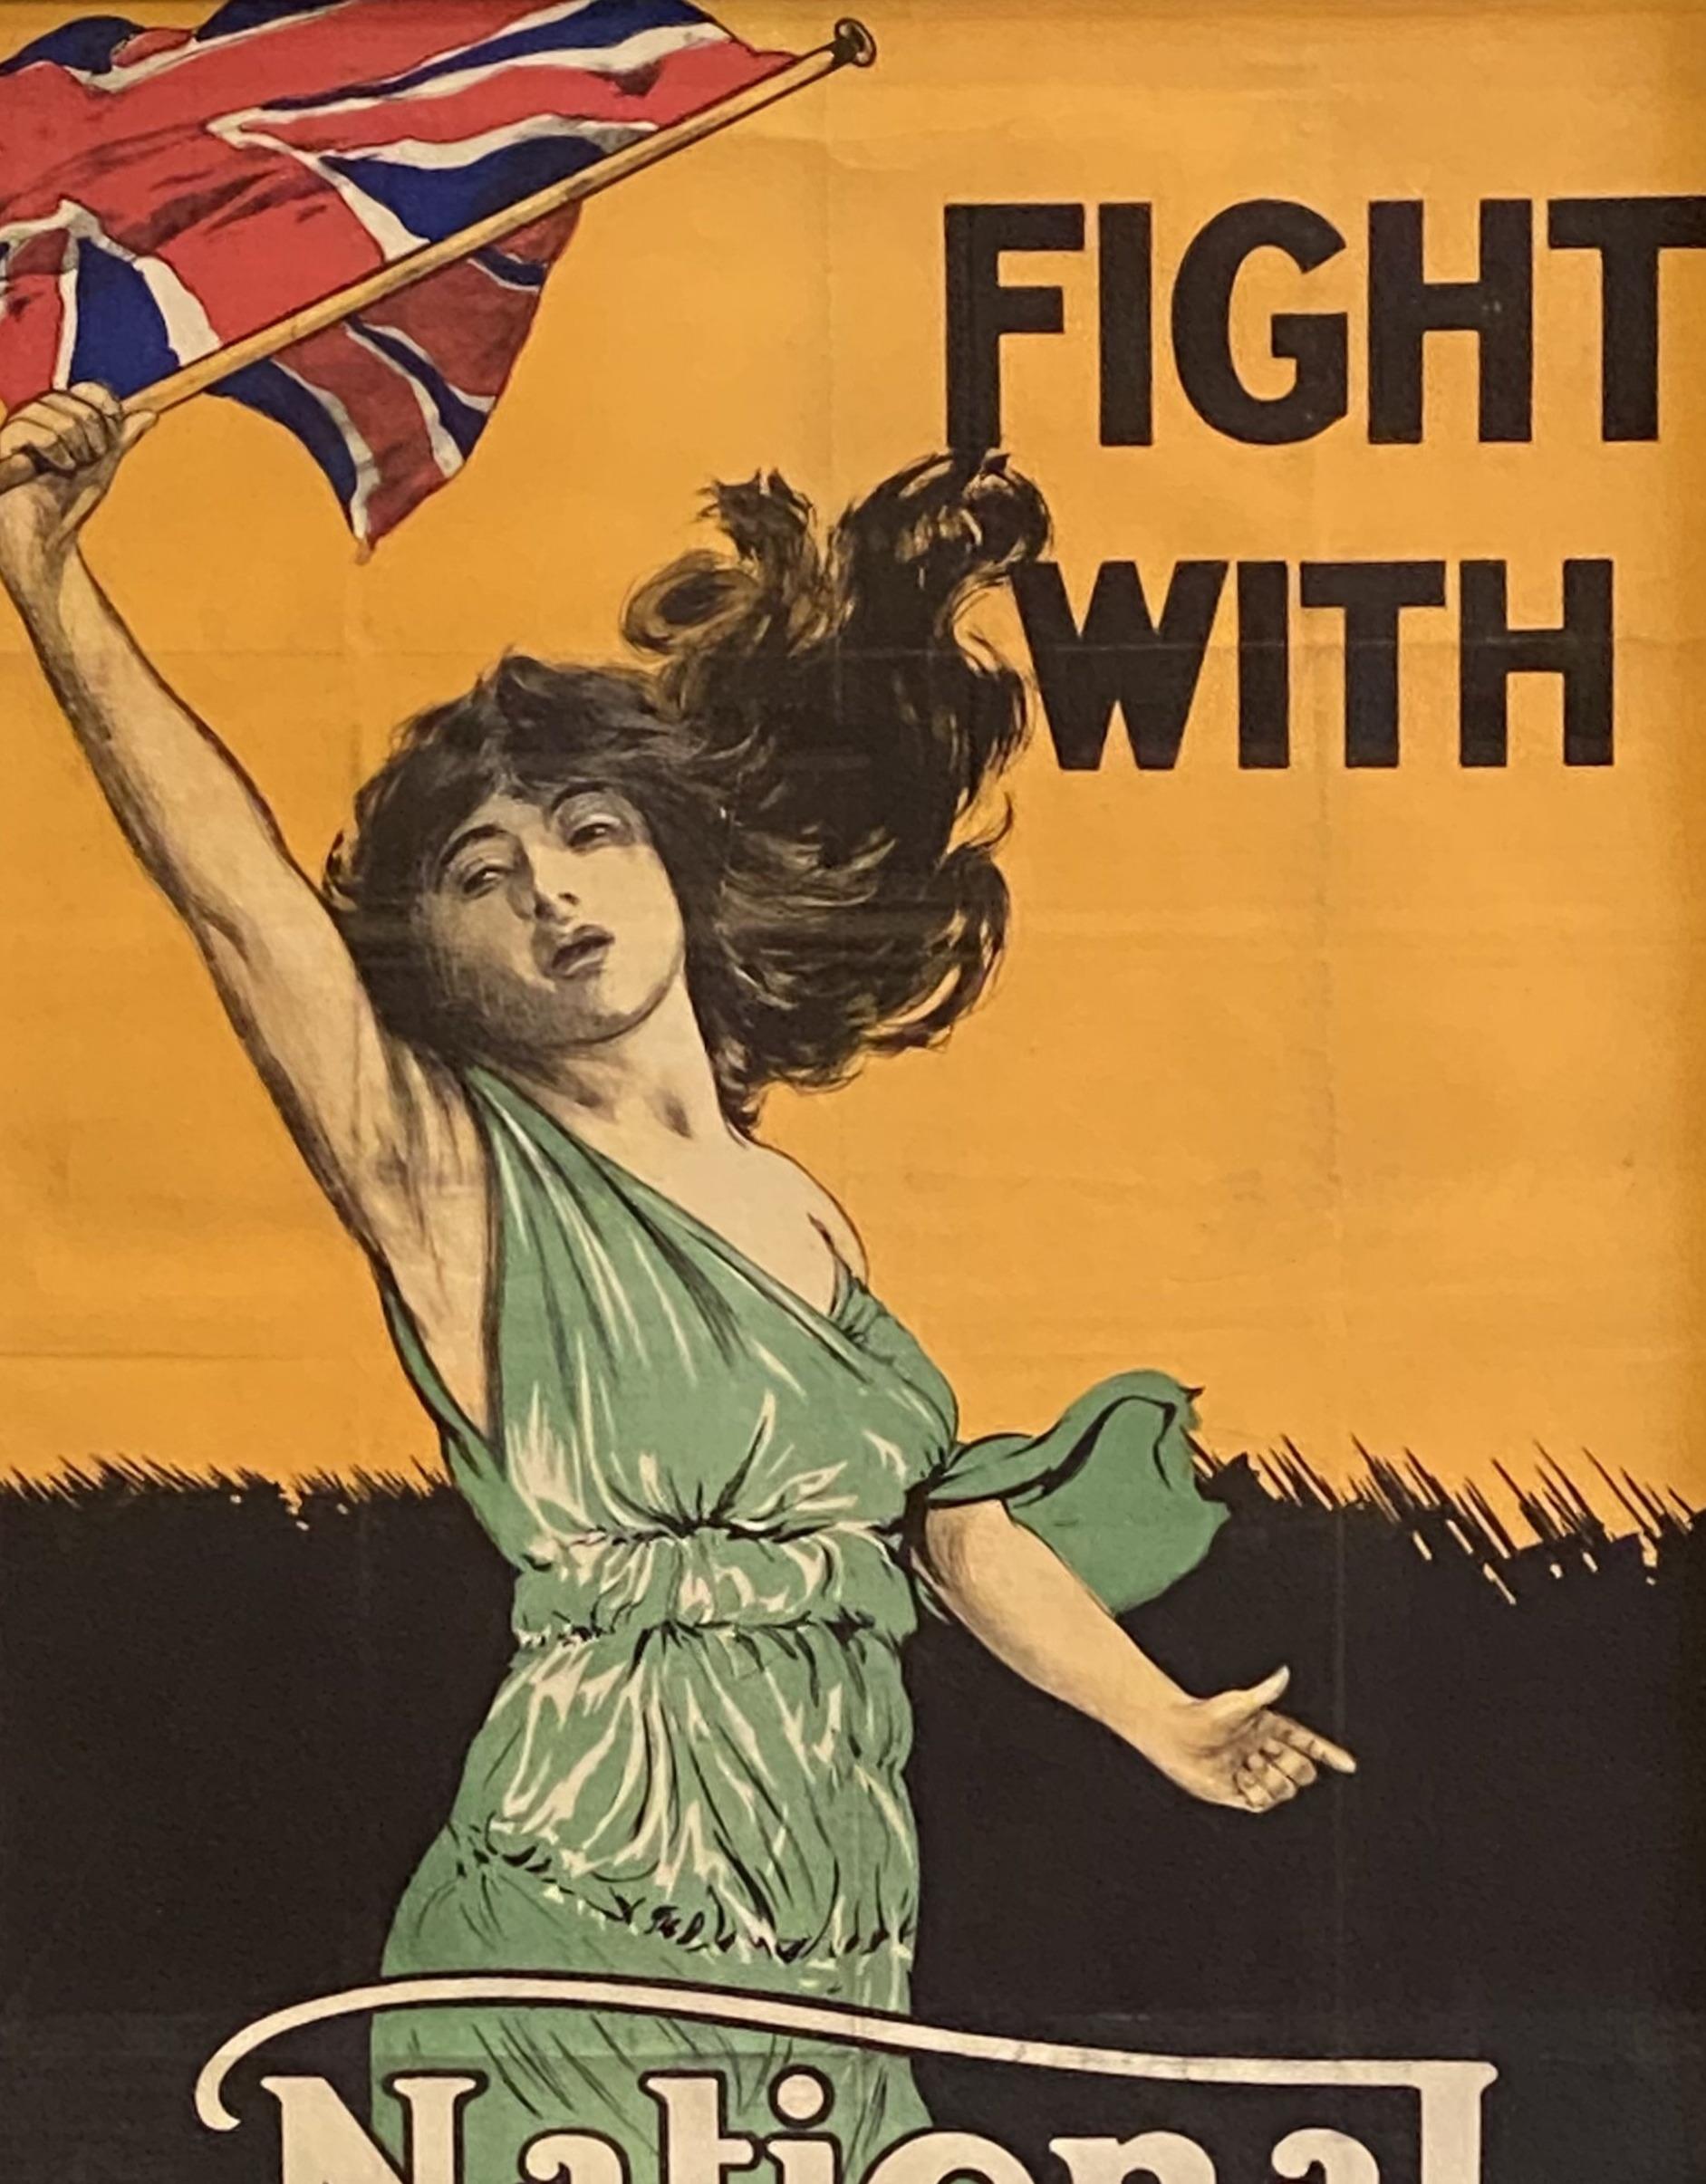 Dies ist ein altes britisches Plakat aus dem Ersten Weltkrieg, das die Betrachter auffordert, mit 